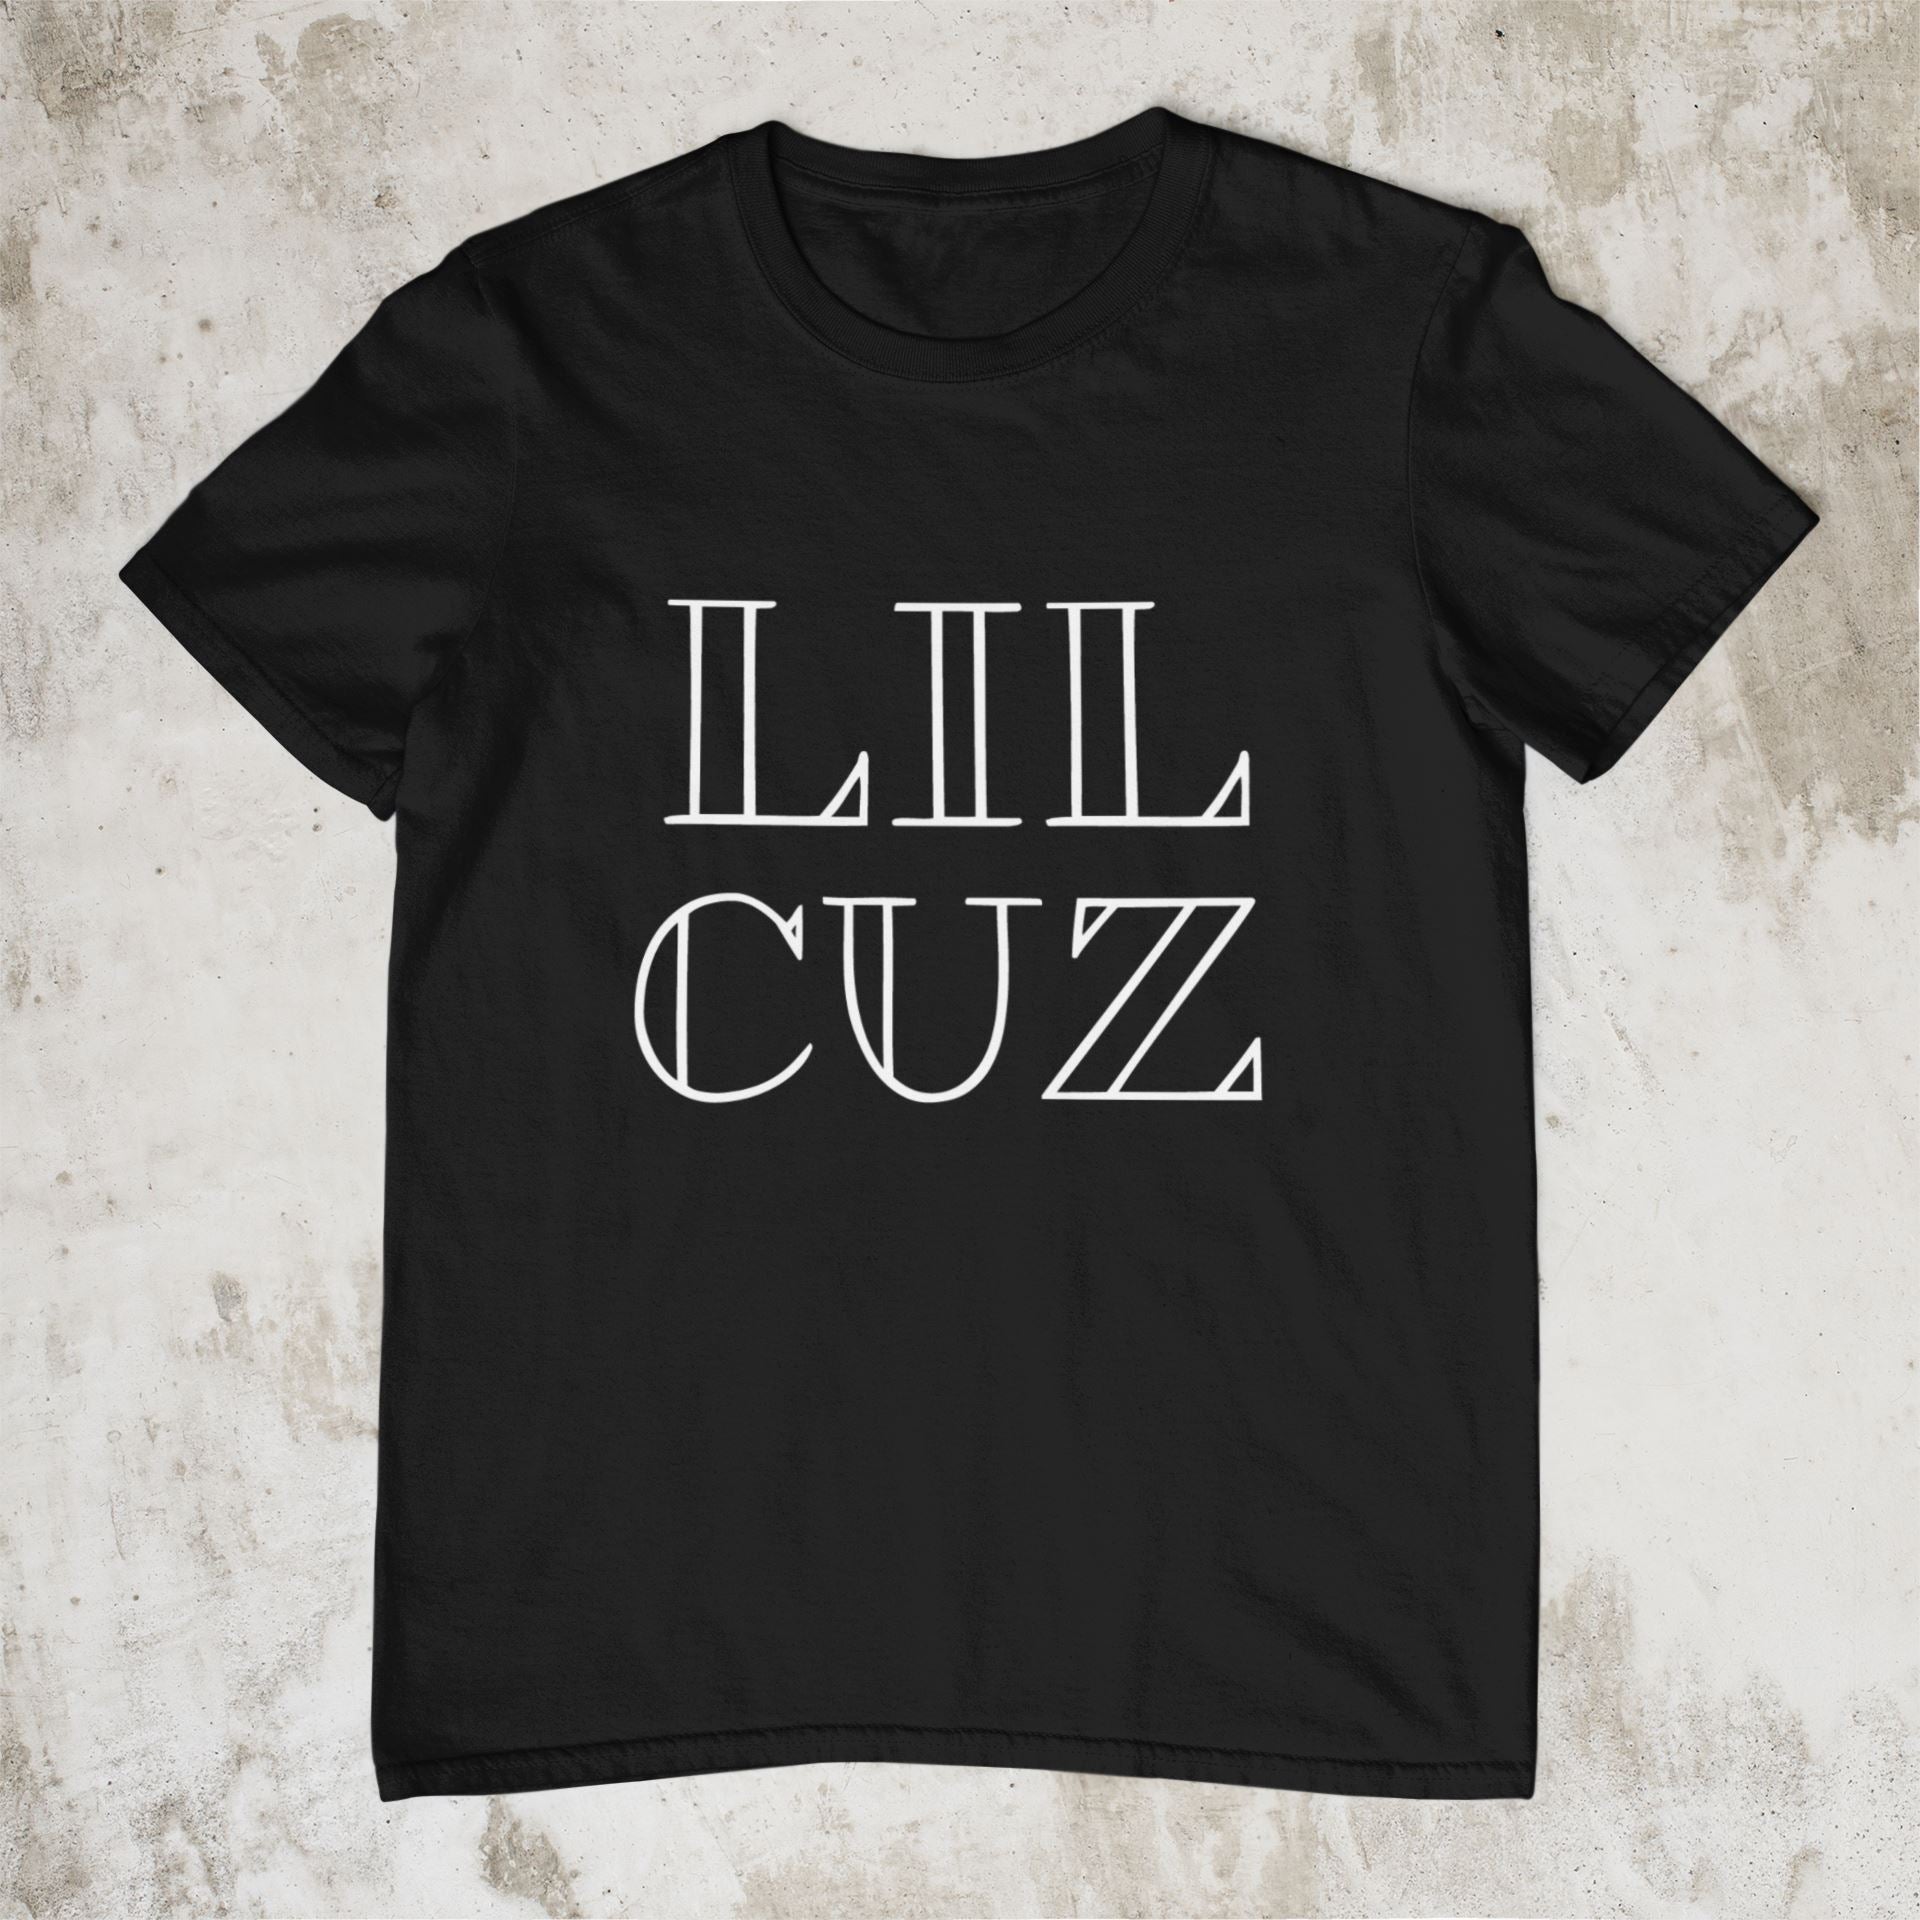 Big Cuz Lil Cuz T-shirts